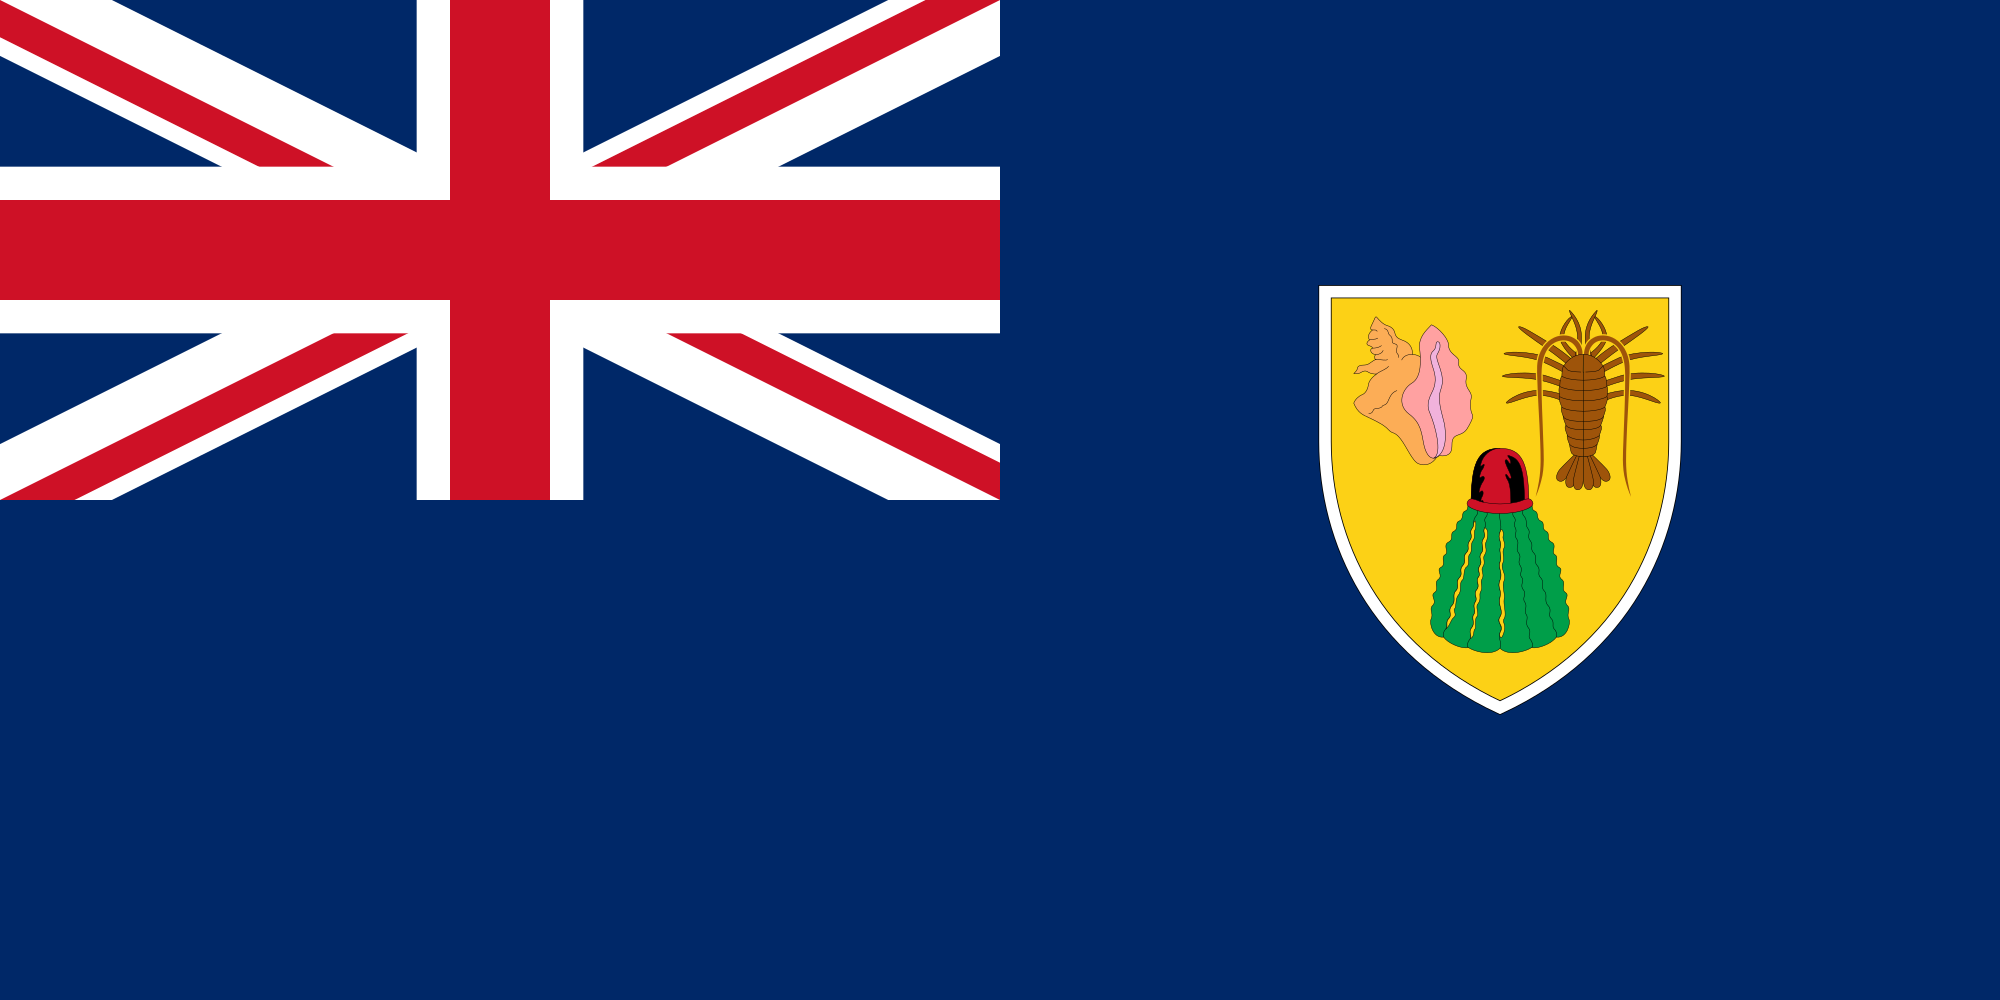 ÐÐ°ÑÑÐ¸Ð½ÐºÐ¸ Ð¿Ð¾ Ð·Ð°Ð¿ÑÐ¾ÑÑ The Turks and Caicos Islands flag